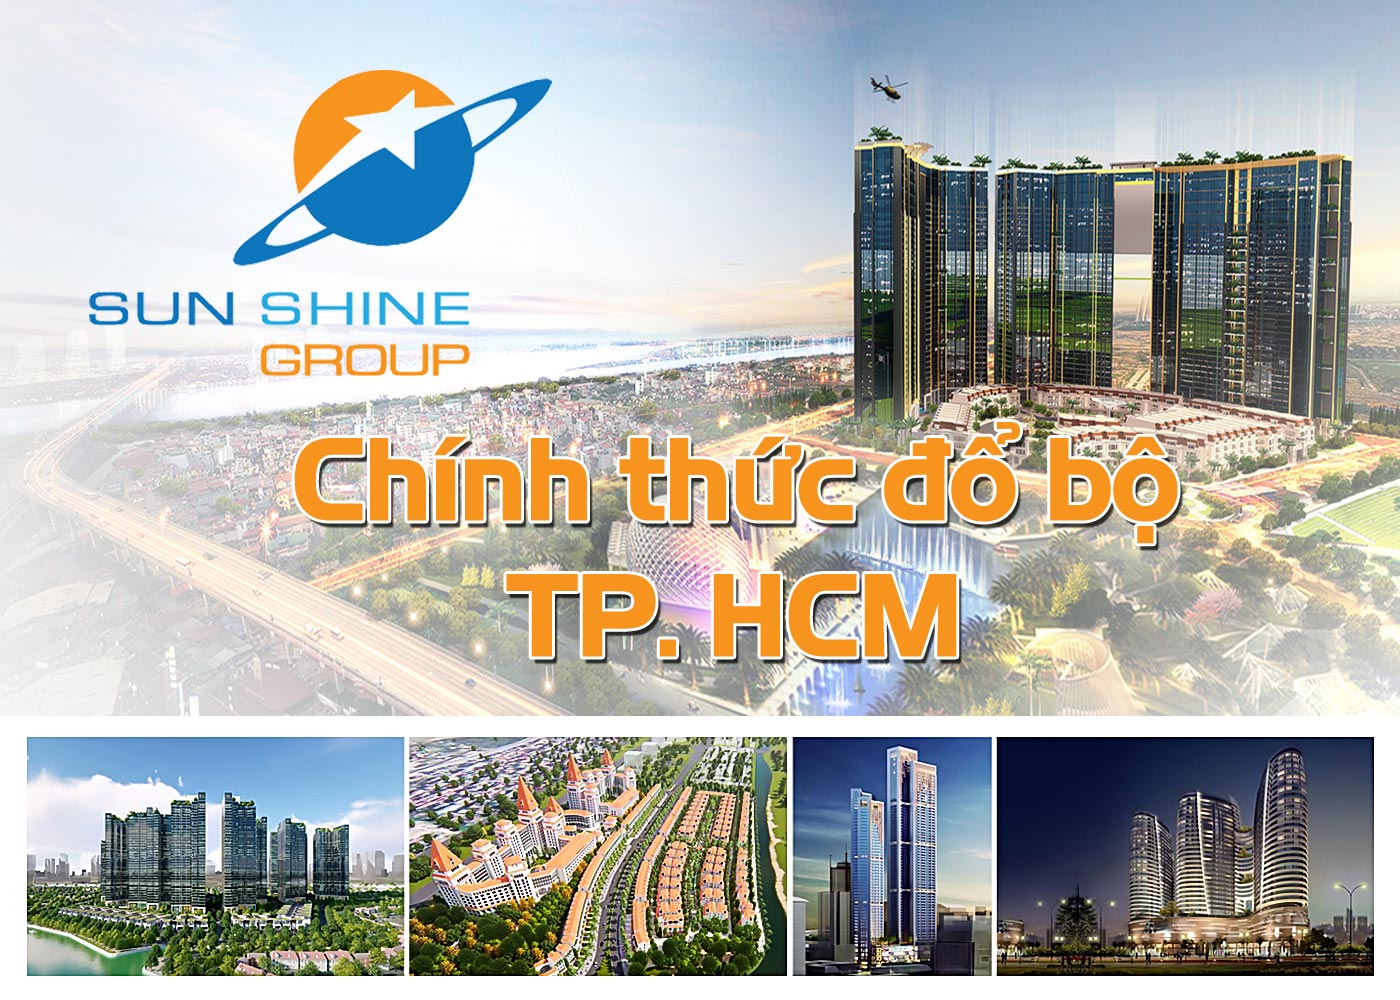 Sunshine Group chính thức đổ bộ TP.HCM